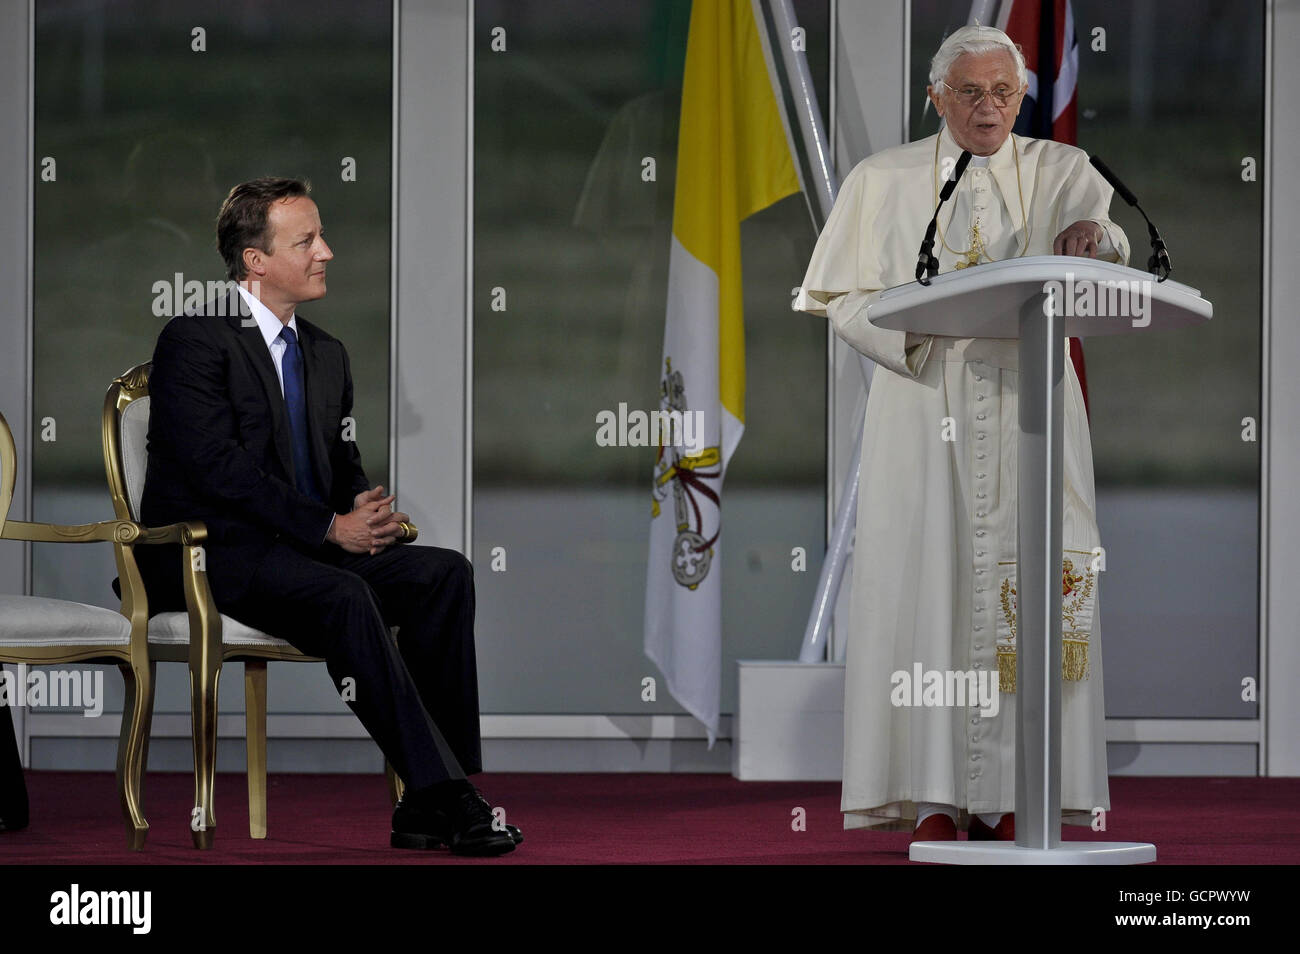 Le Premier ministre David Cameron écoute le pape Benoît XVI prononcer un discours lors d'une cérémonie de départ à l'aéroport international de Birmingham le dernier jour de sa visite d'État au Royaume-Uni. Banque D'Images